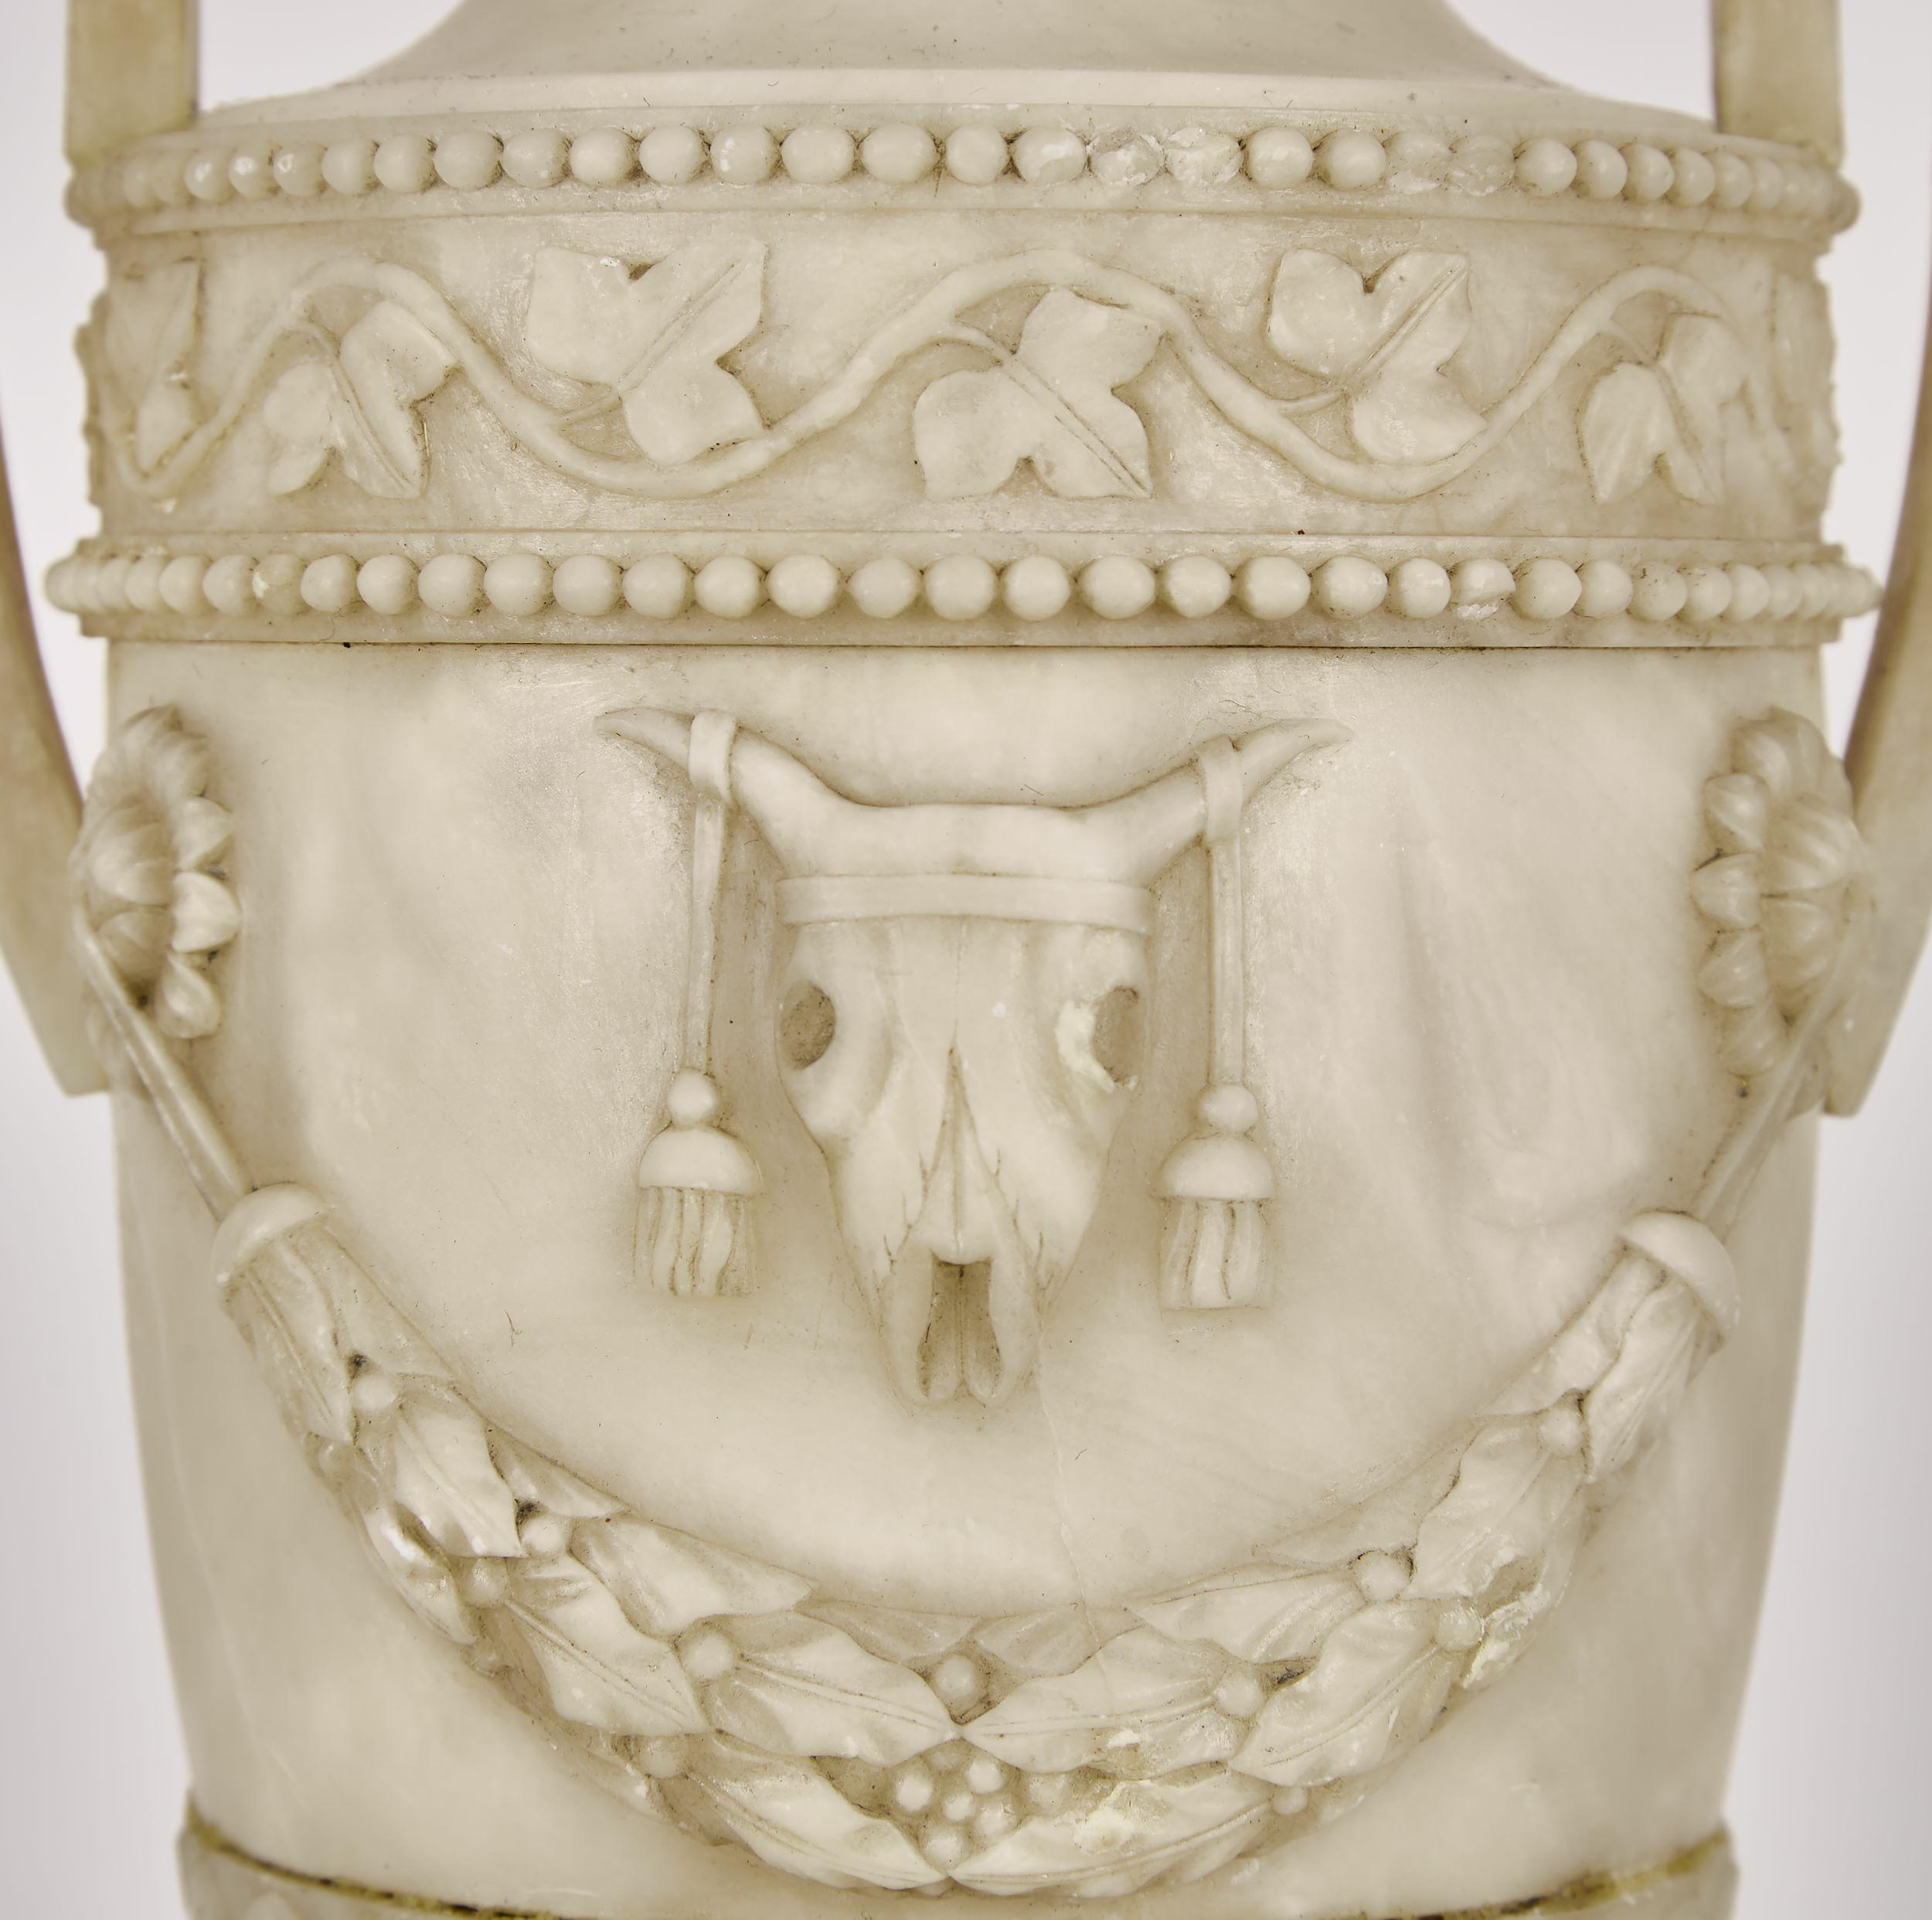 George III. Alabaster-Urne in Form einer Lampe.

Klassische Form mit blattgeschmücktem Fries, darüber ein mit Totenköpfen und Glockenblättern verzierter Korpus. Runder Sockel mit Akanthusblatt. Ausgestattet mit quadratischen